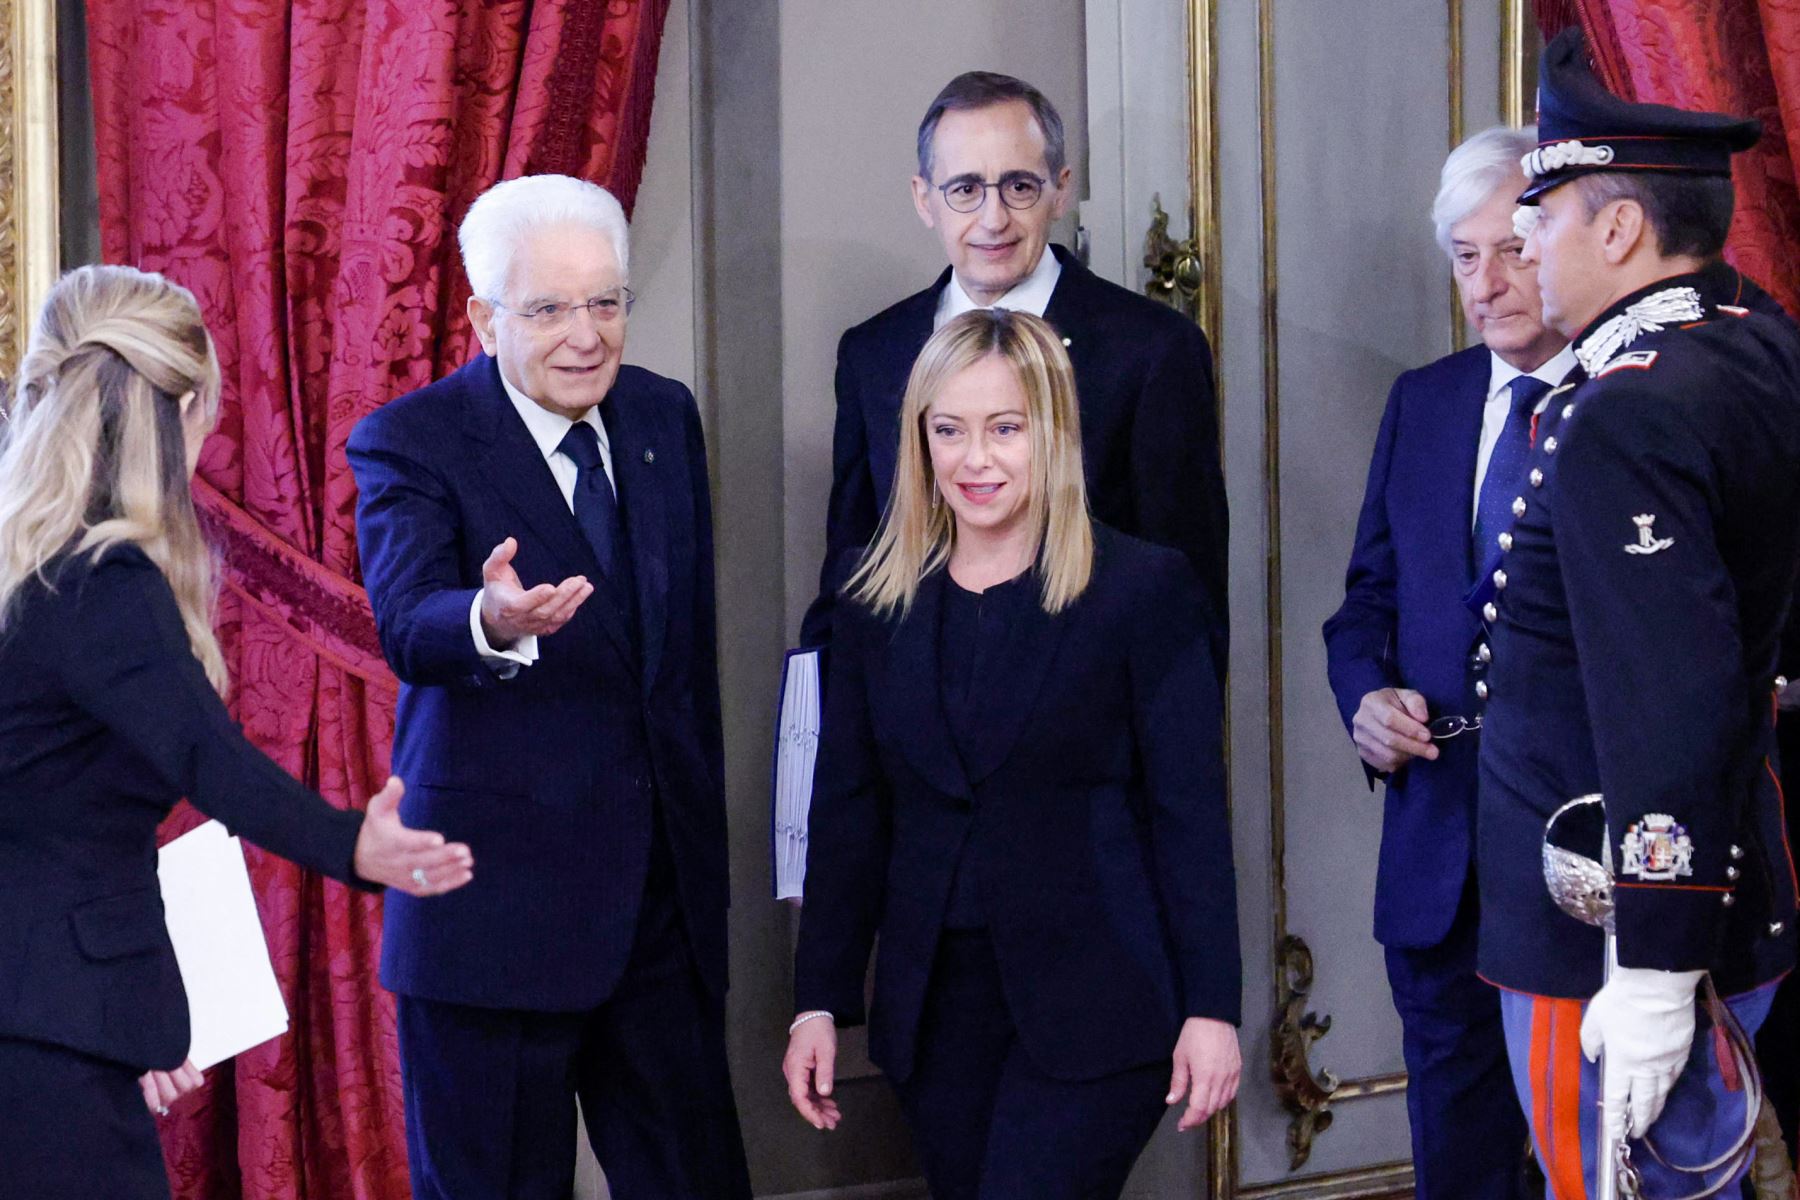 El presidente italiano, Sergio Mattarella (2do a la izquierda), da la bienvenida a la nueva primera ministra Giorgia Meloni (centro) cuando llega a la ceremonia de juramento del nuevo gobierno italiano en el Palacio del Quirinal en Roma el 22 de octubre de 2022. Foto: AFP